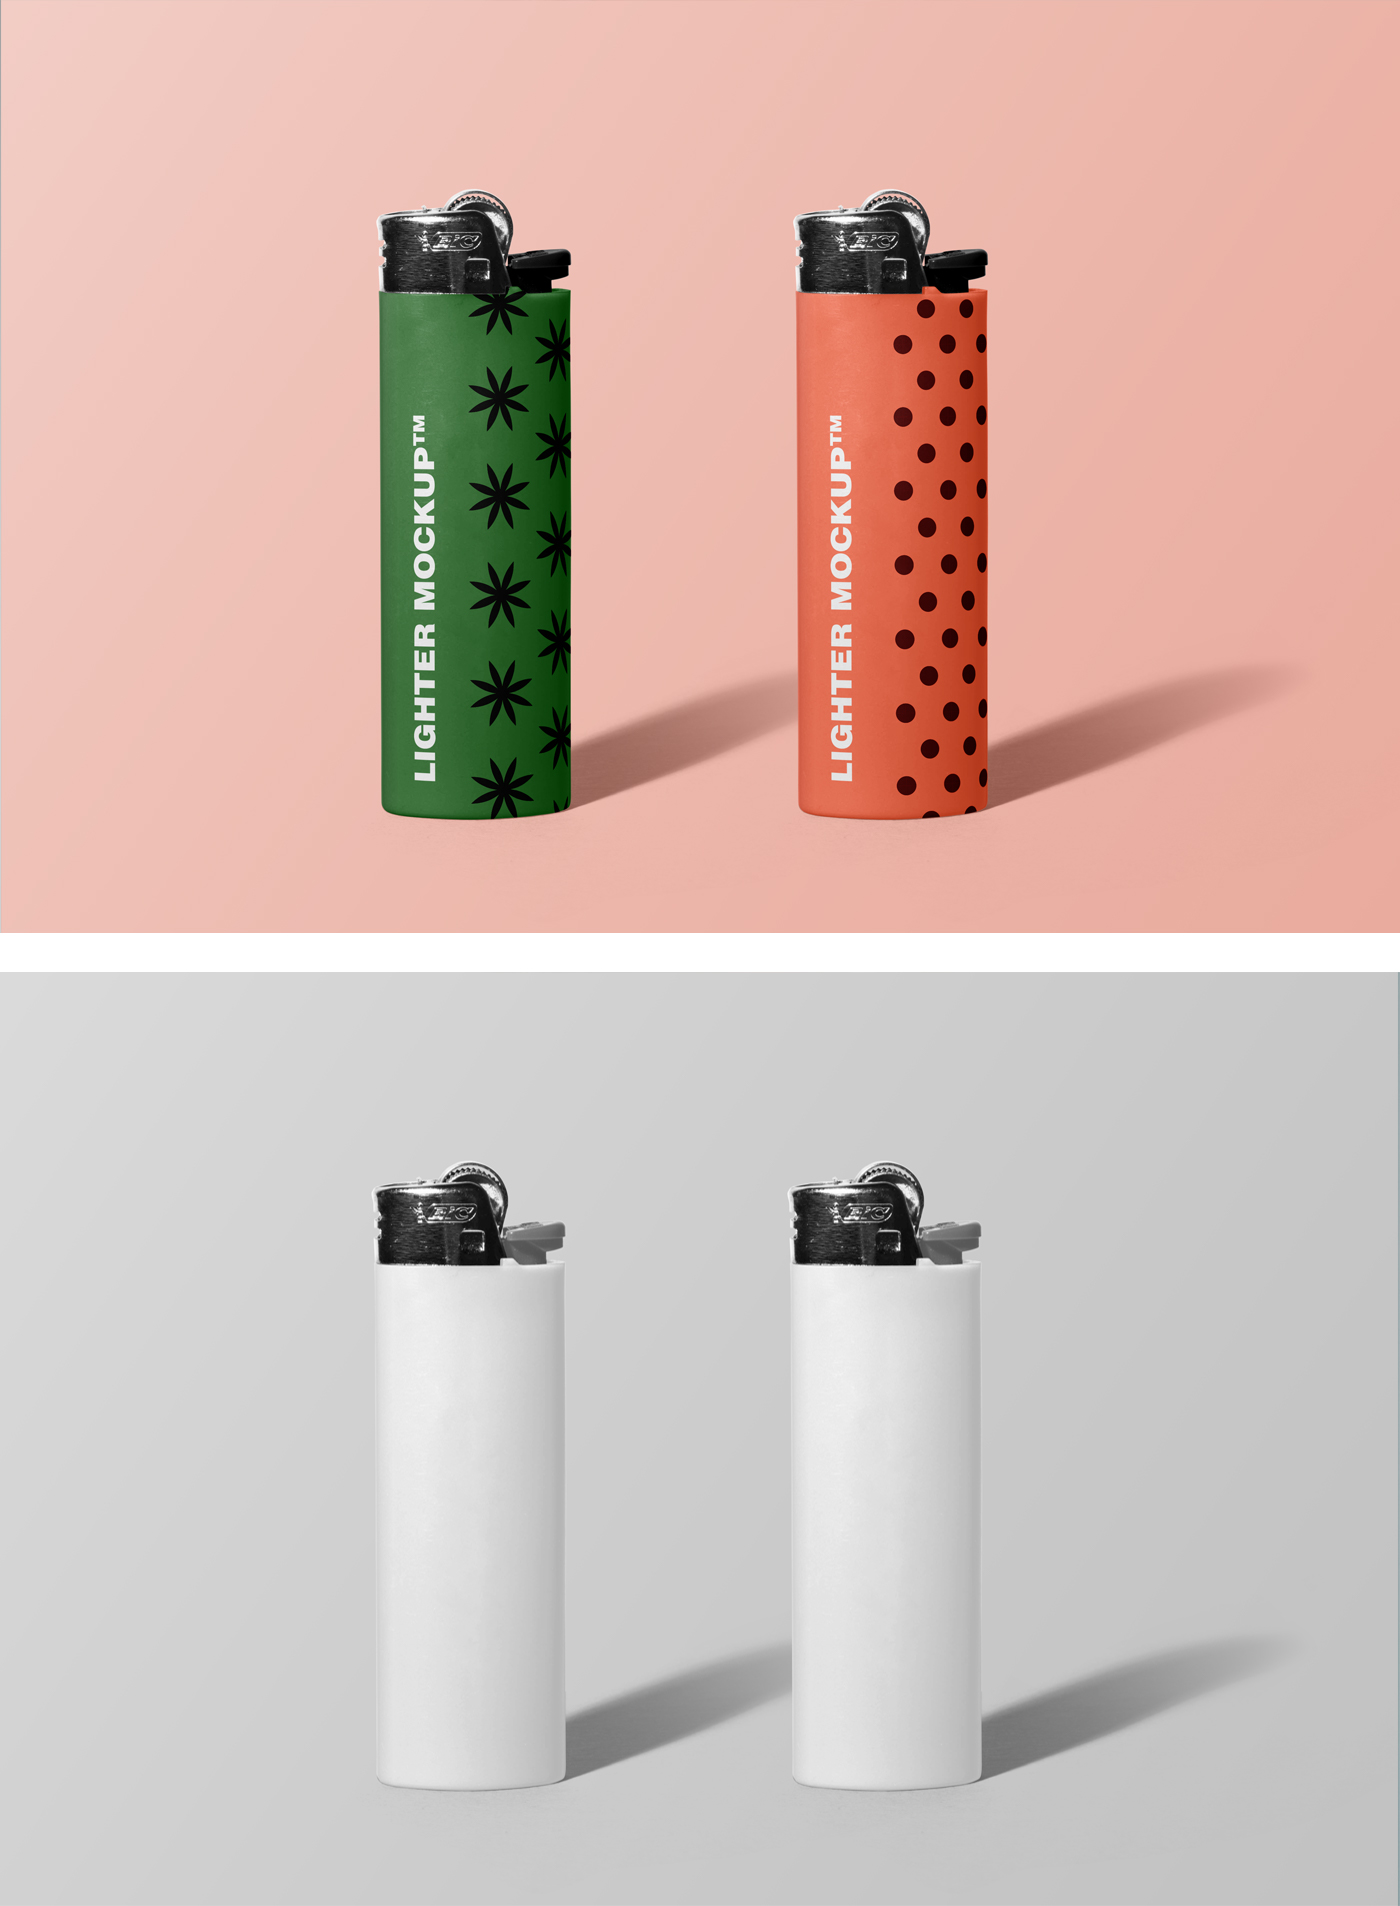 Lighter Mr.Mockup | Graphic Design Freebies